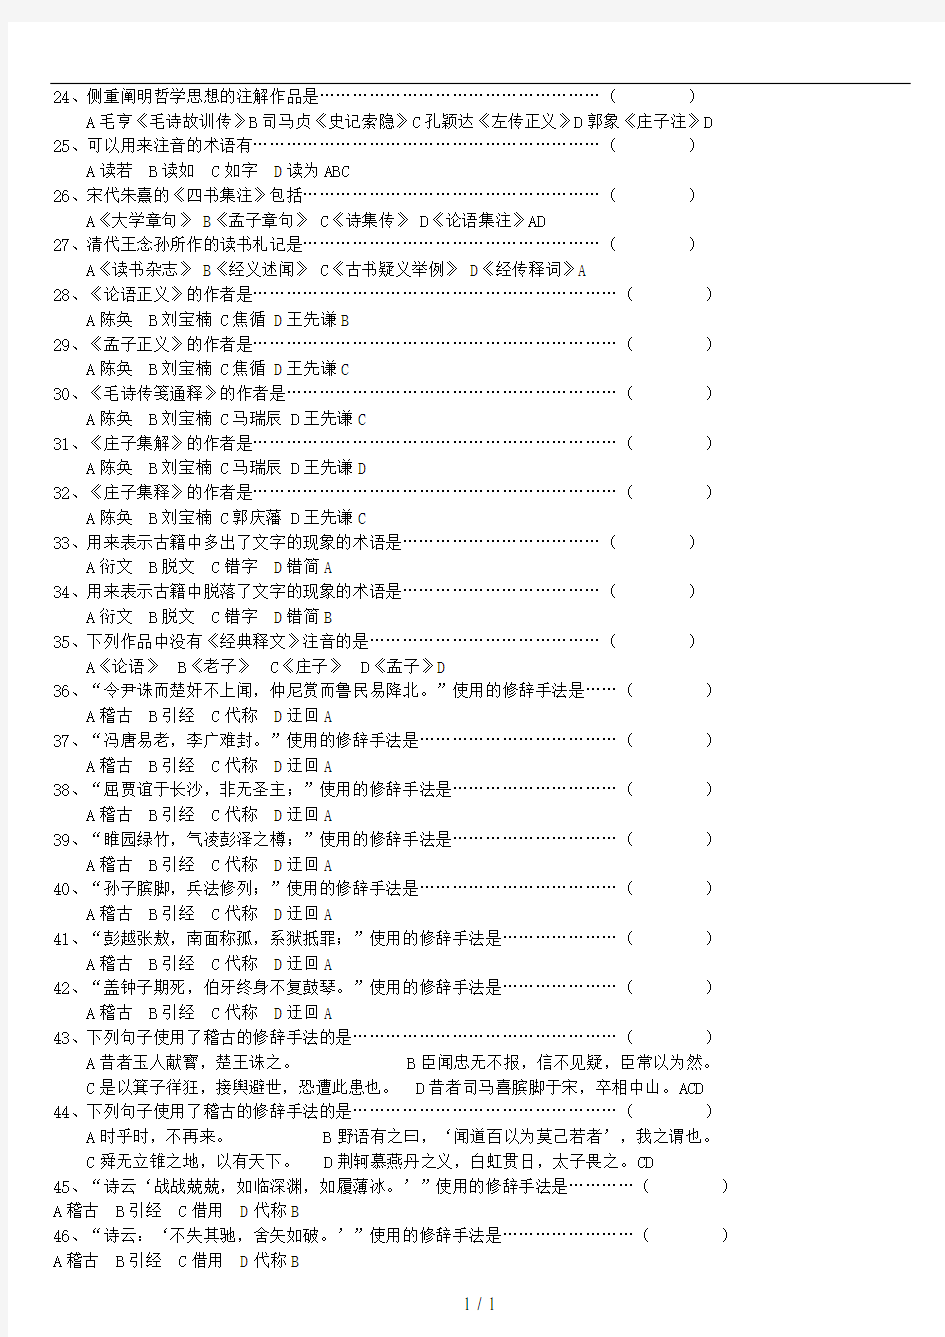 古代汉语第二学期总题库